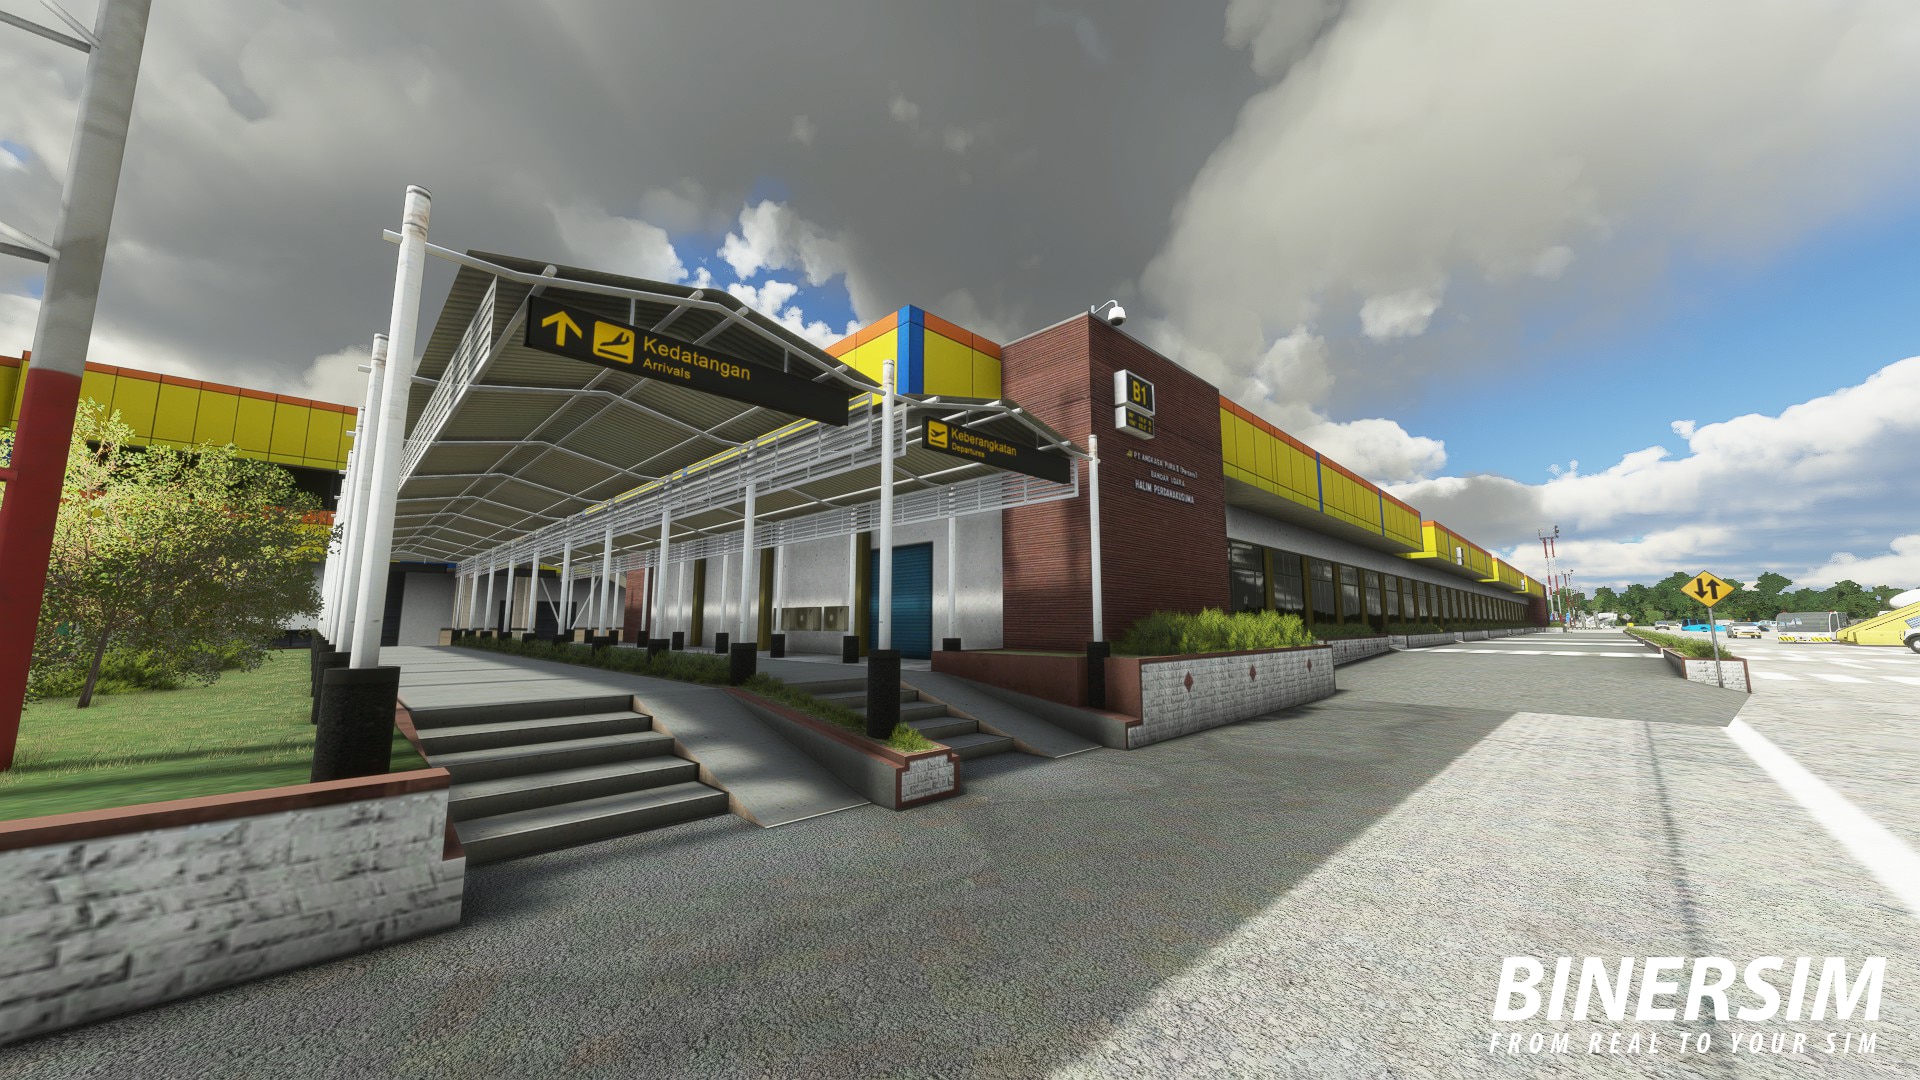 BinerSim Releases Halim Perdanakusuma Airport for MSFS - BinerSim, Microsoft Flight Simulator